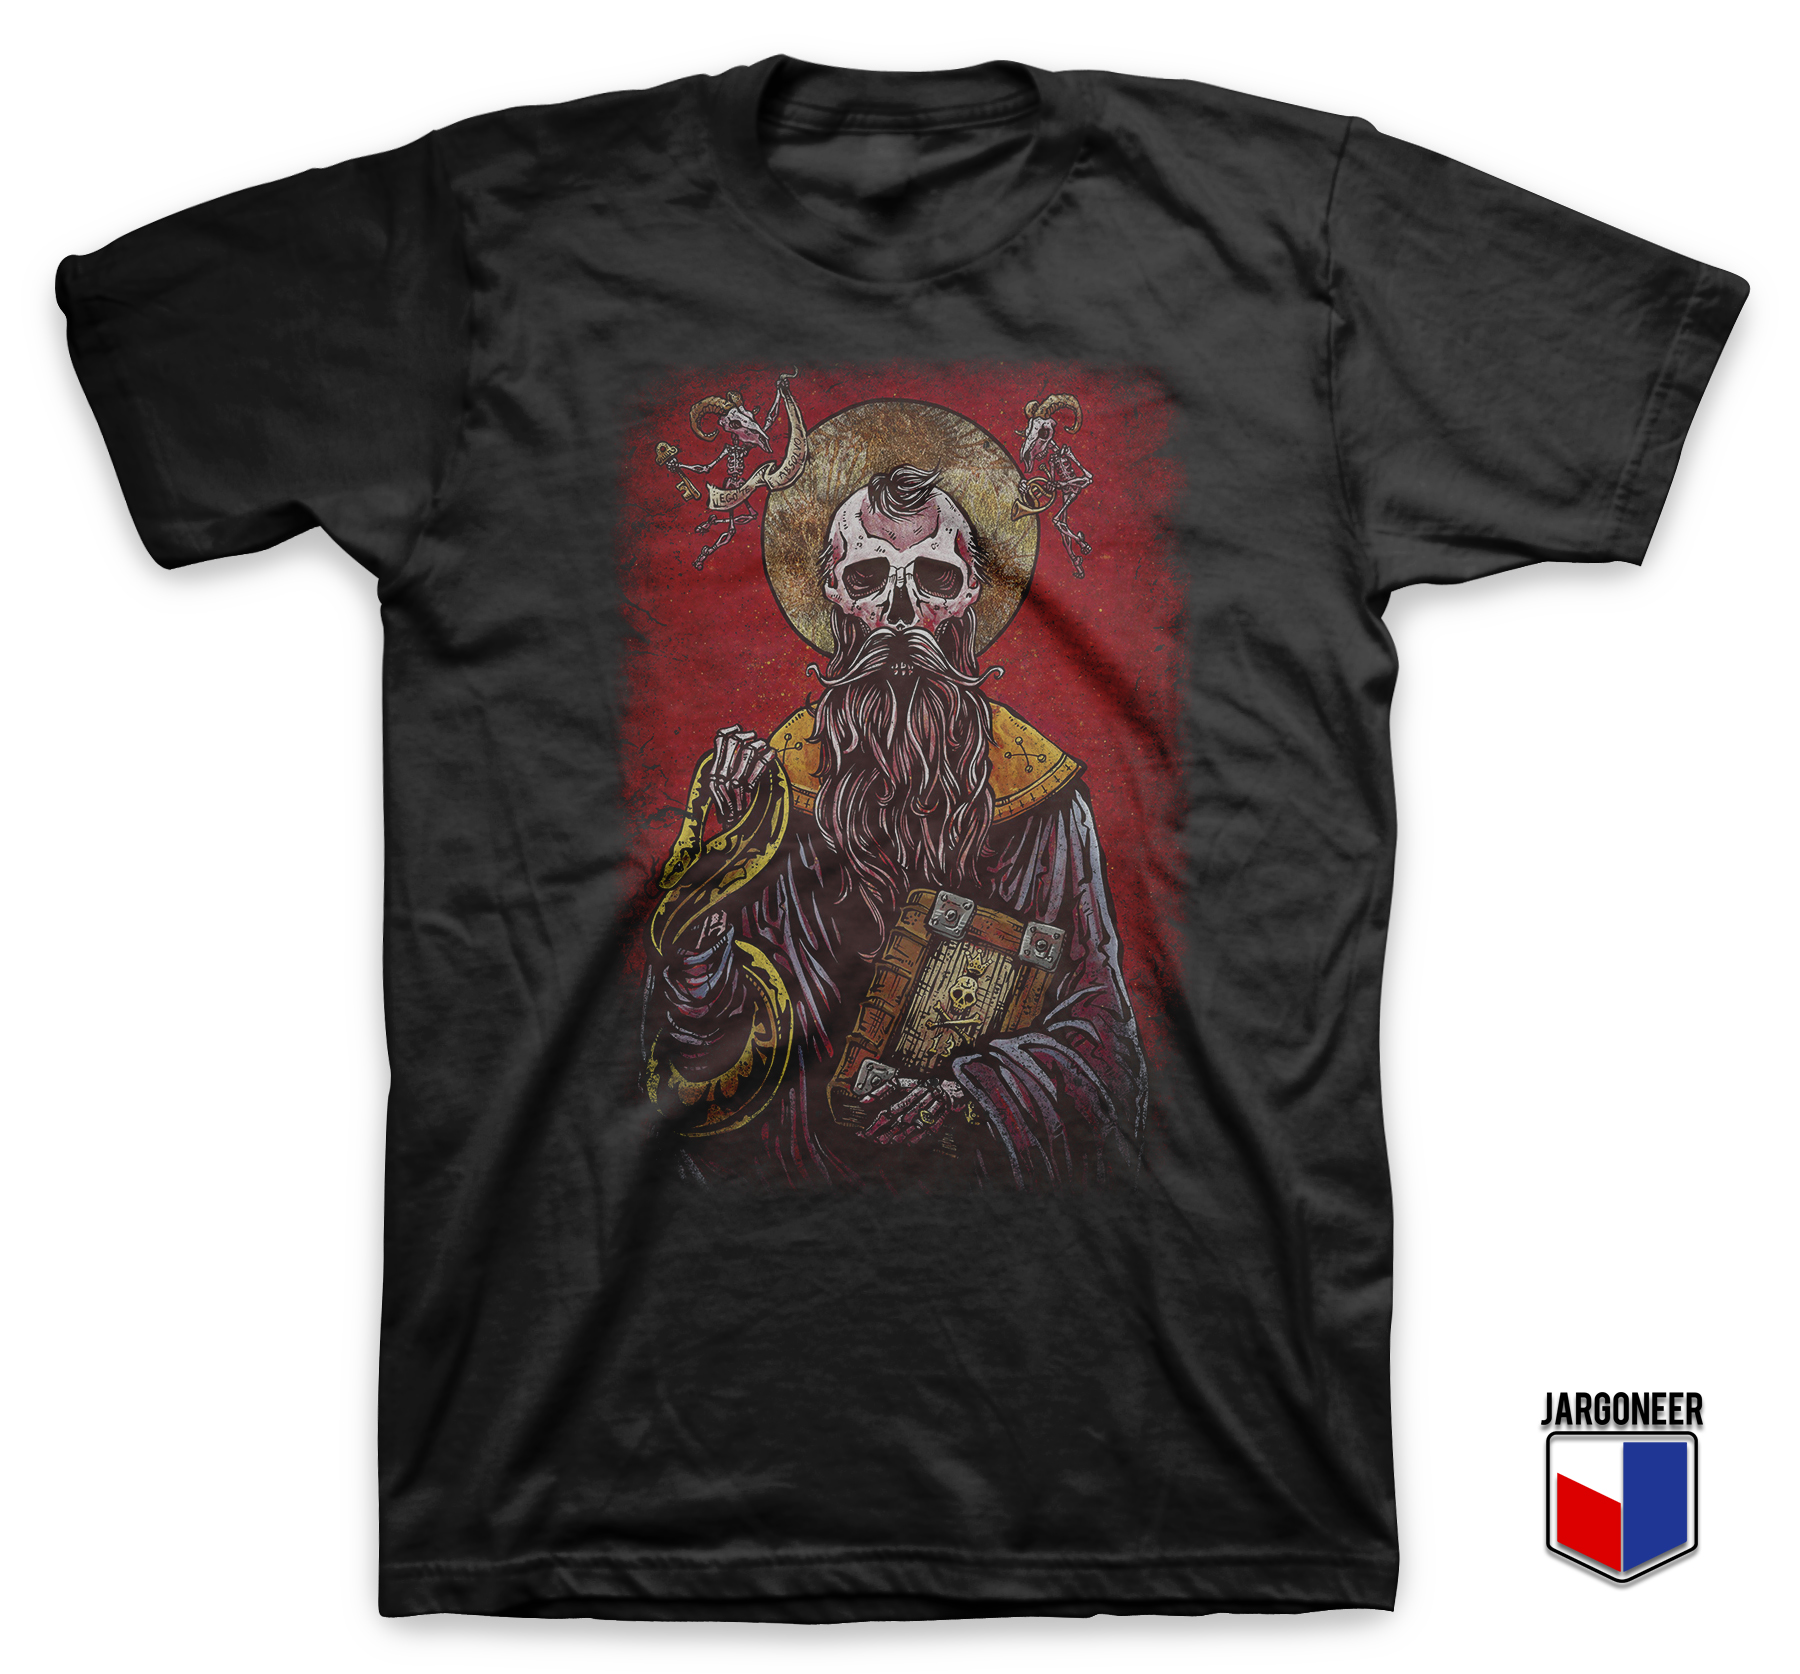 The Sinner Saint Black T Shirt - Shop Unique Graphic Cool Shirt Designs